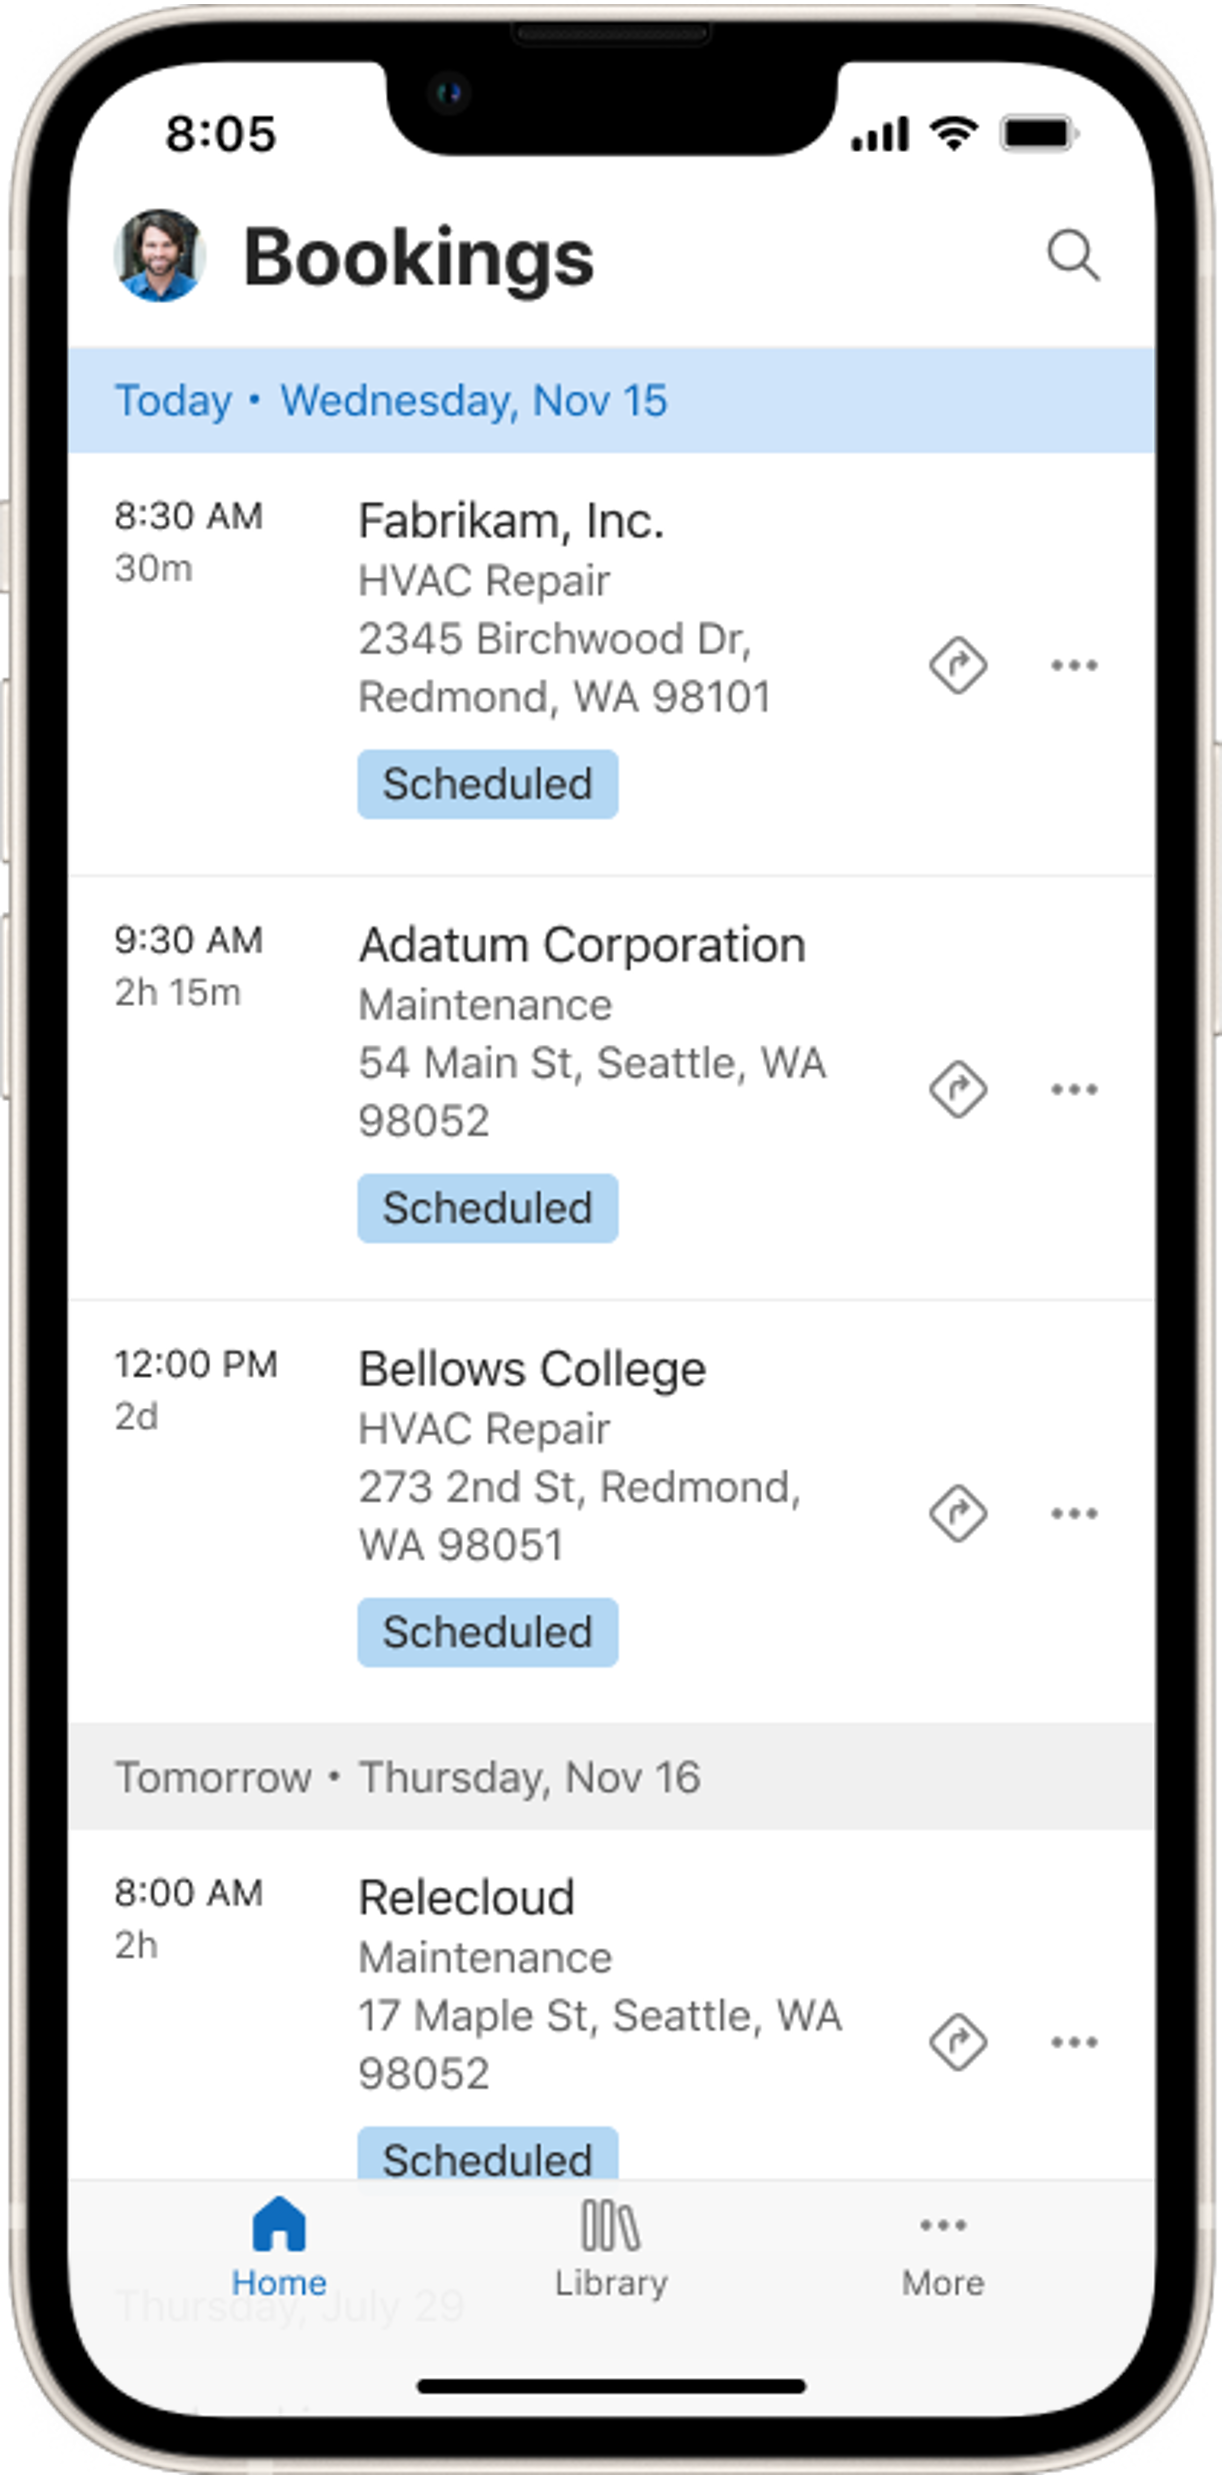 移动设备的呈现，显示 Field Service mobile 应用中的议程视图，视图中显示今天和明天的预订。